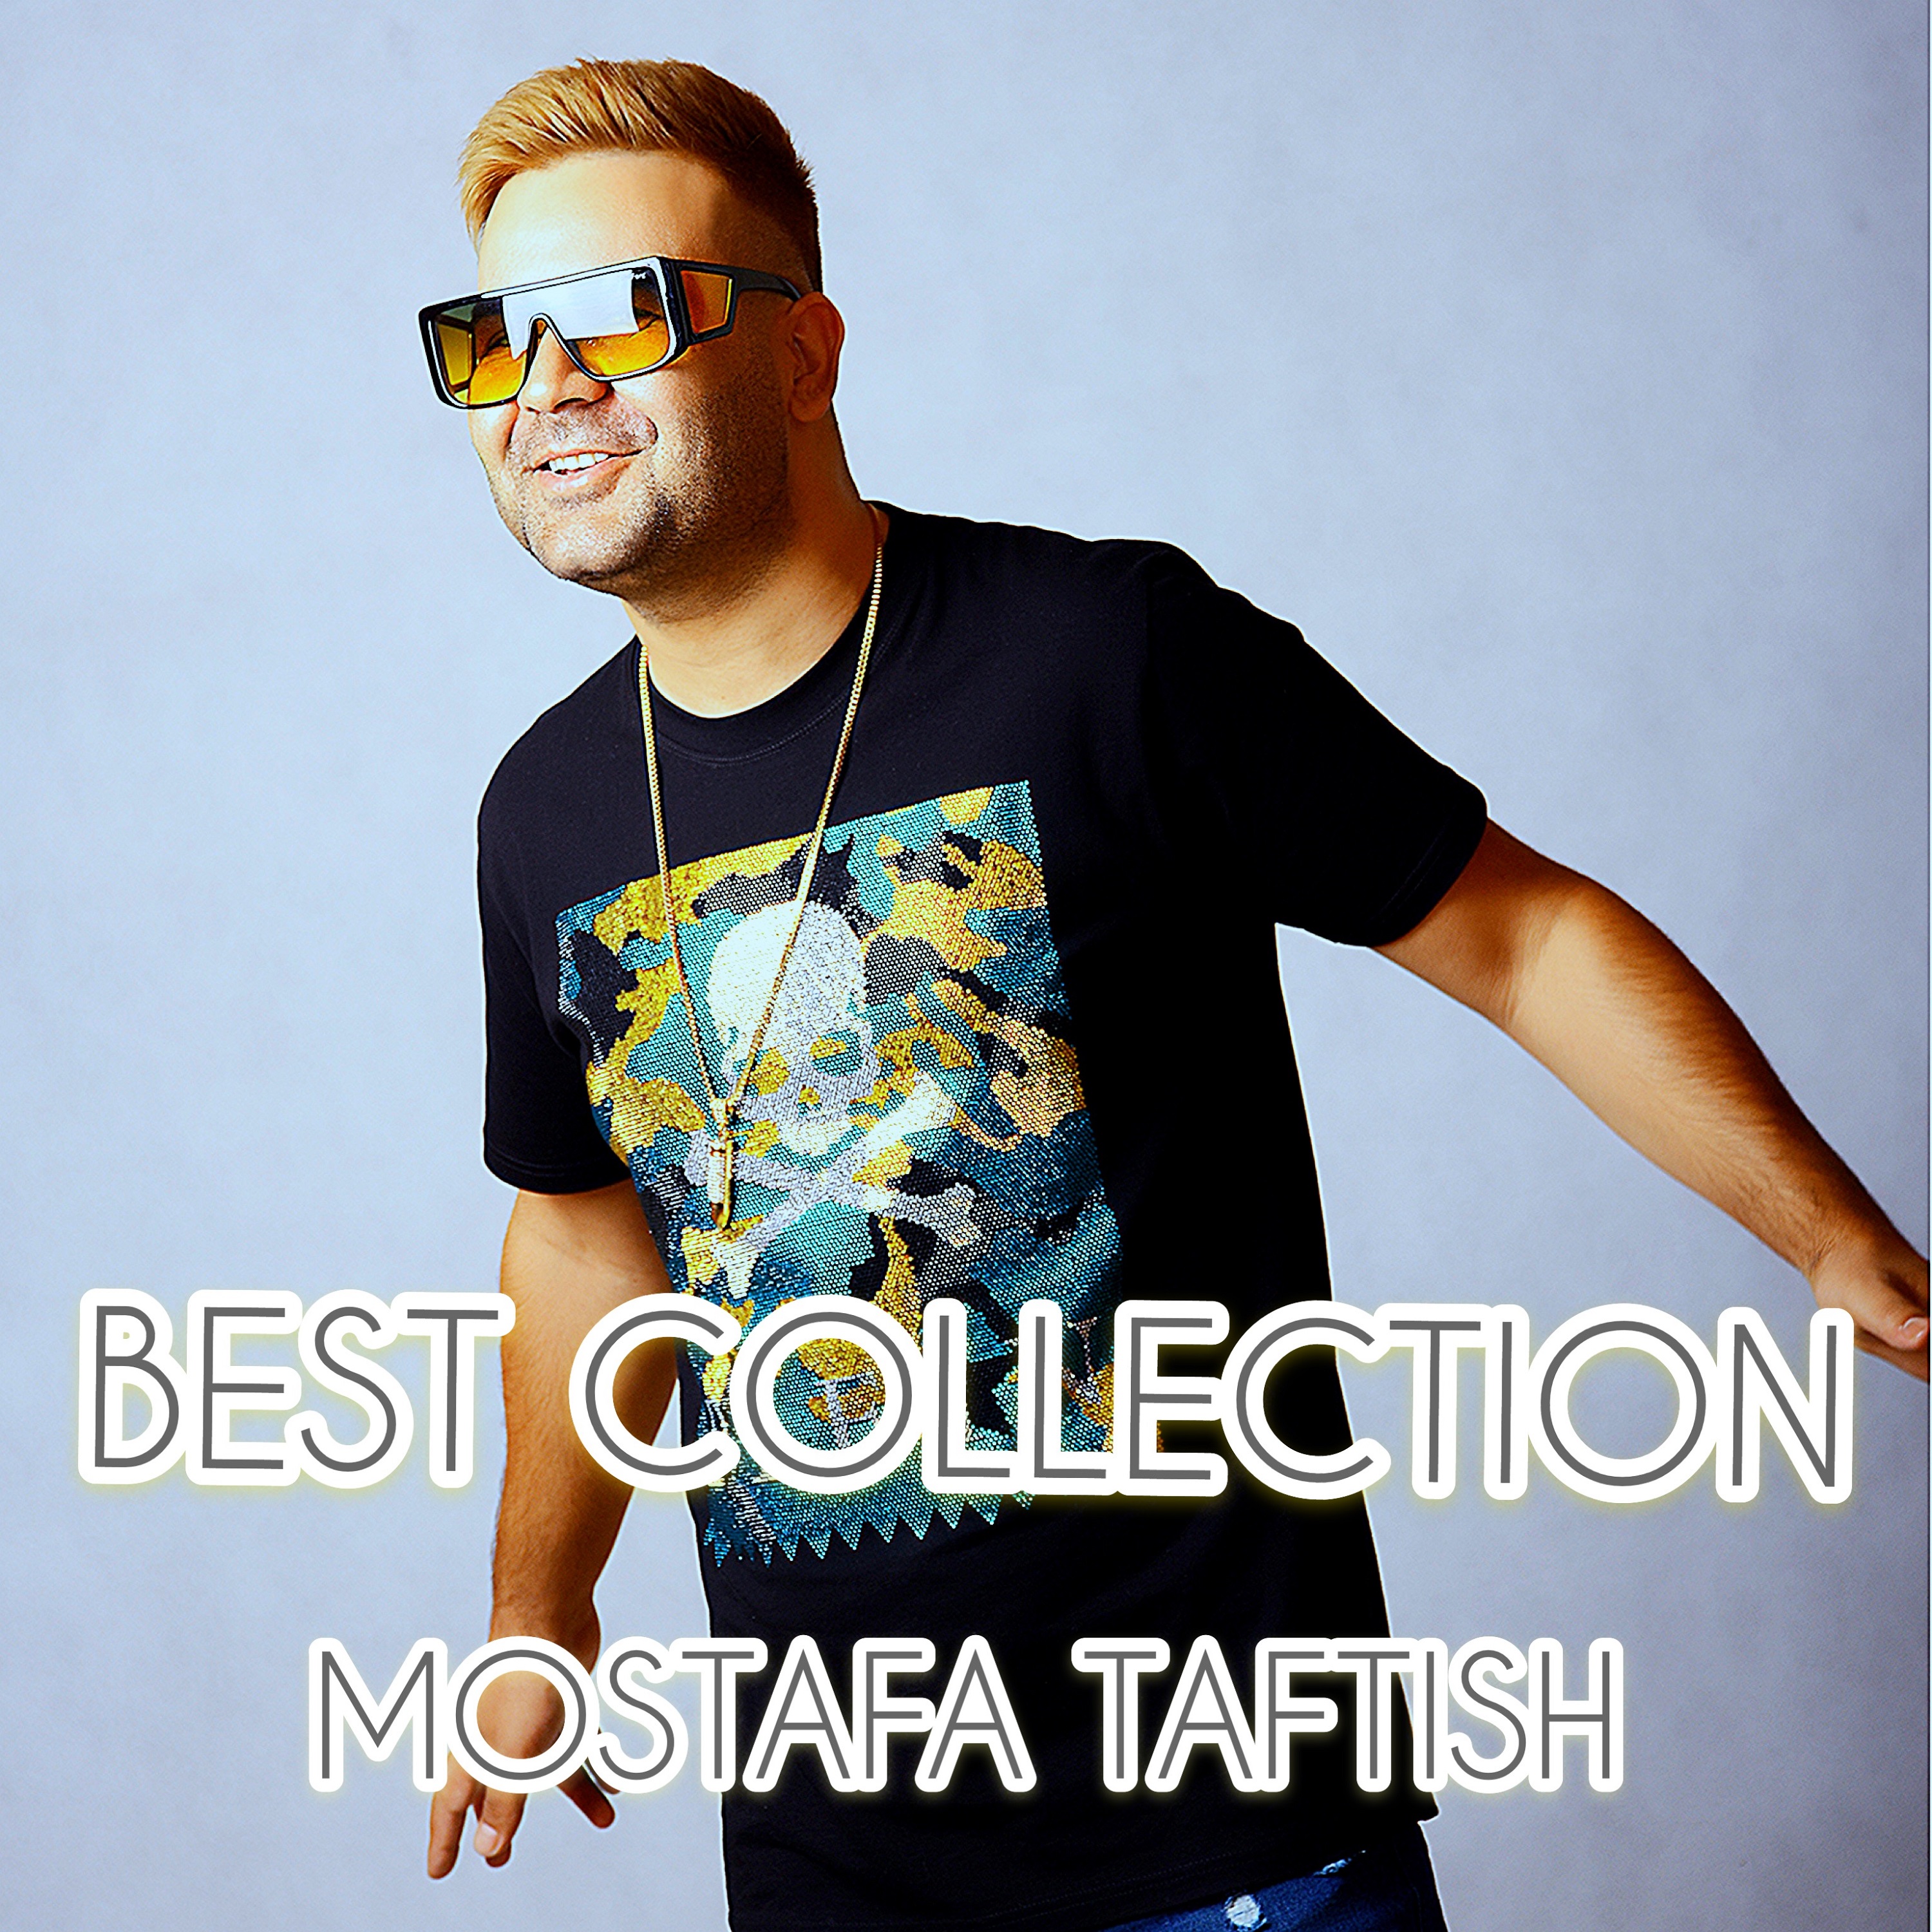  دانلود آهنگ جدید مصطفی تفتیش - عشق یعنی همین | Download New Music By Mostafa Taftish - Eshgh Yani Hamin (feat. Abolfazl Esmaeili)